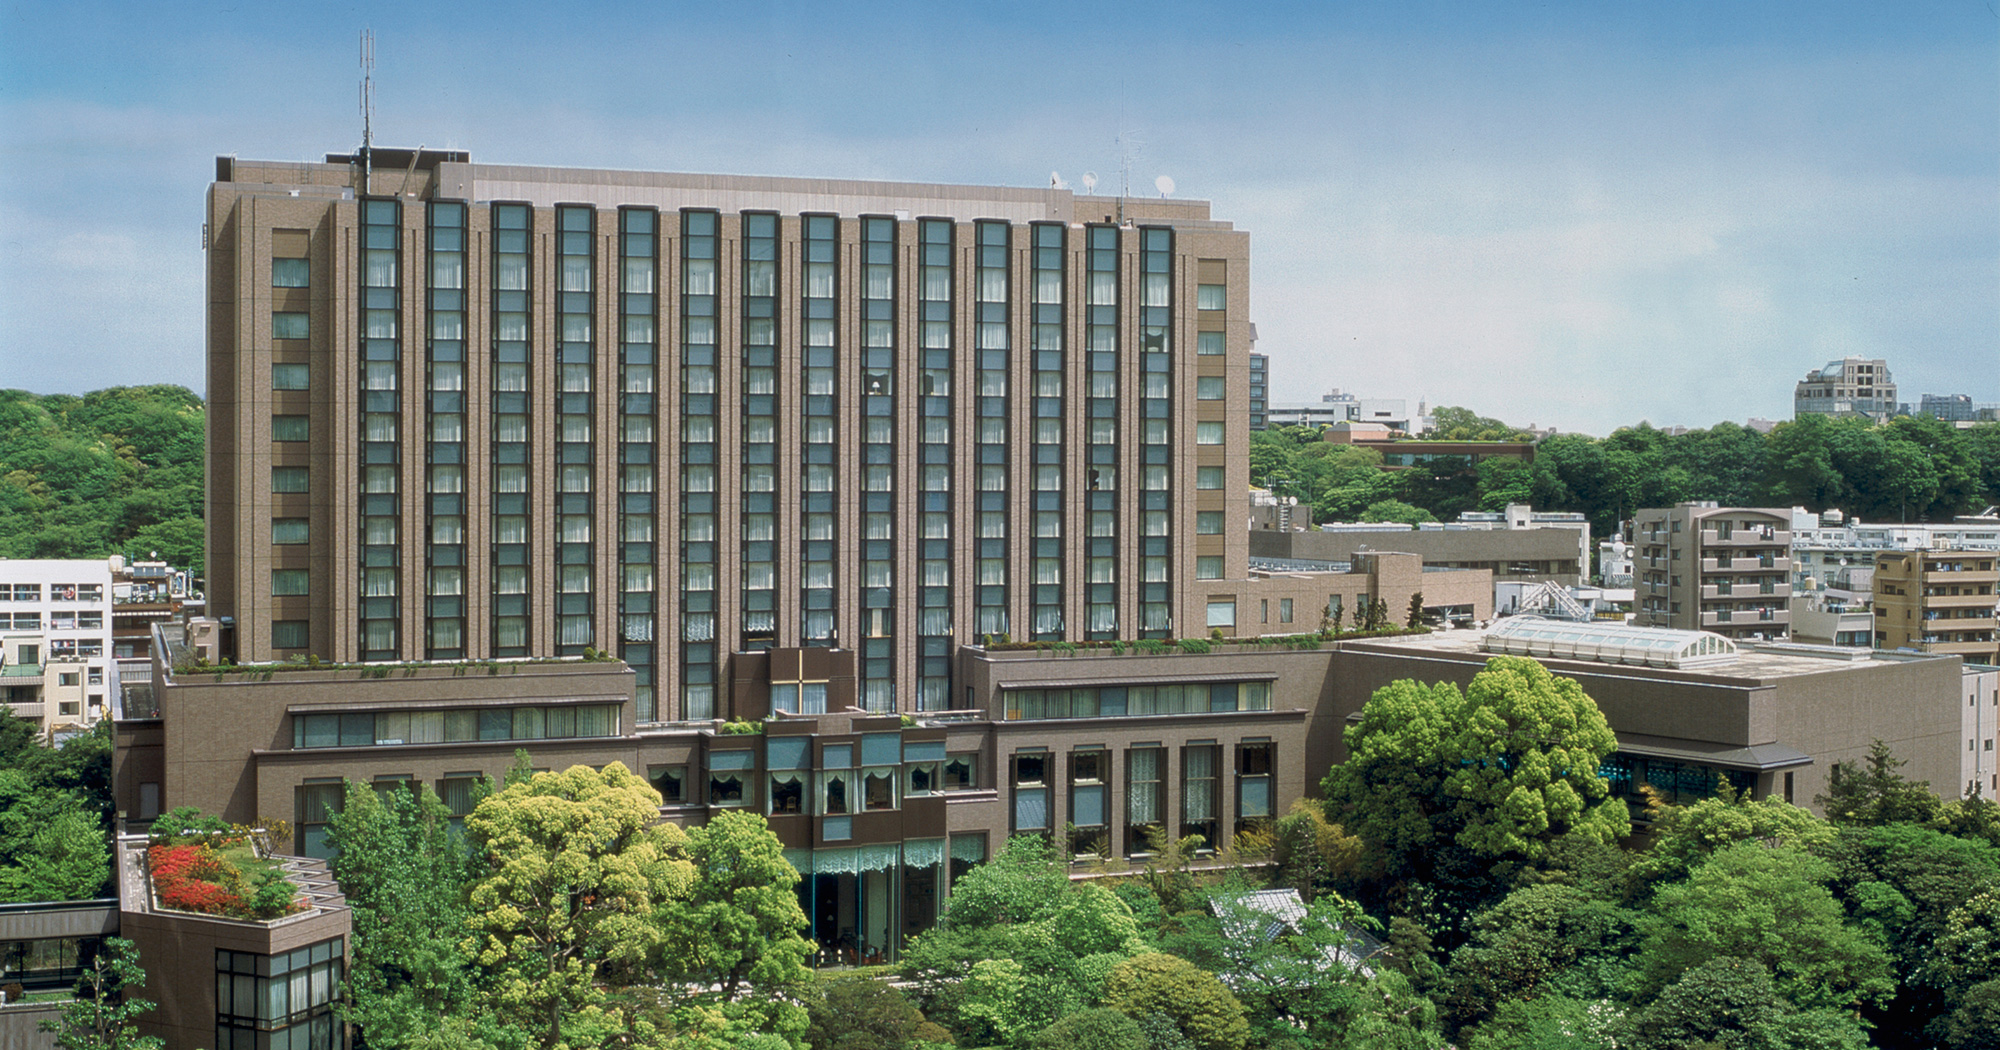 RIHGA Royal Hotel Tokyo